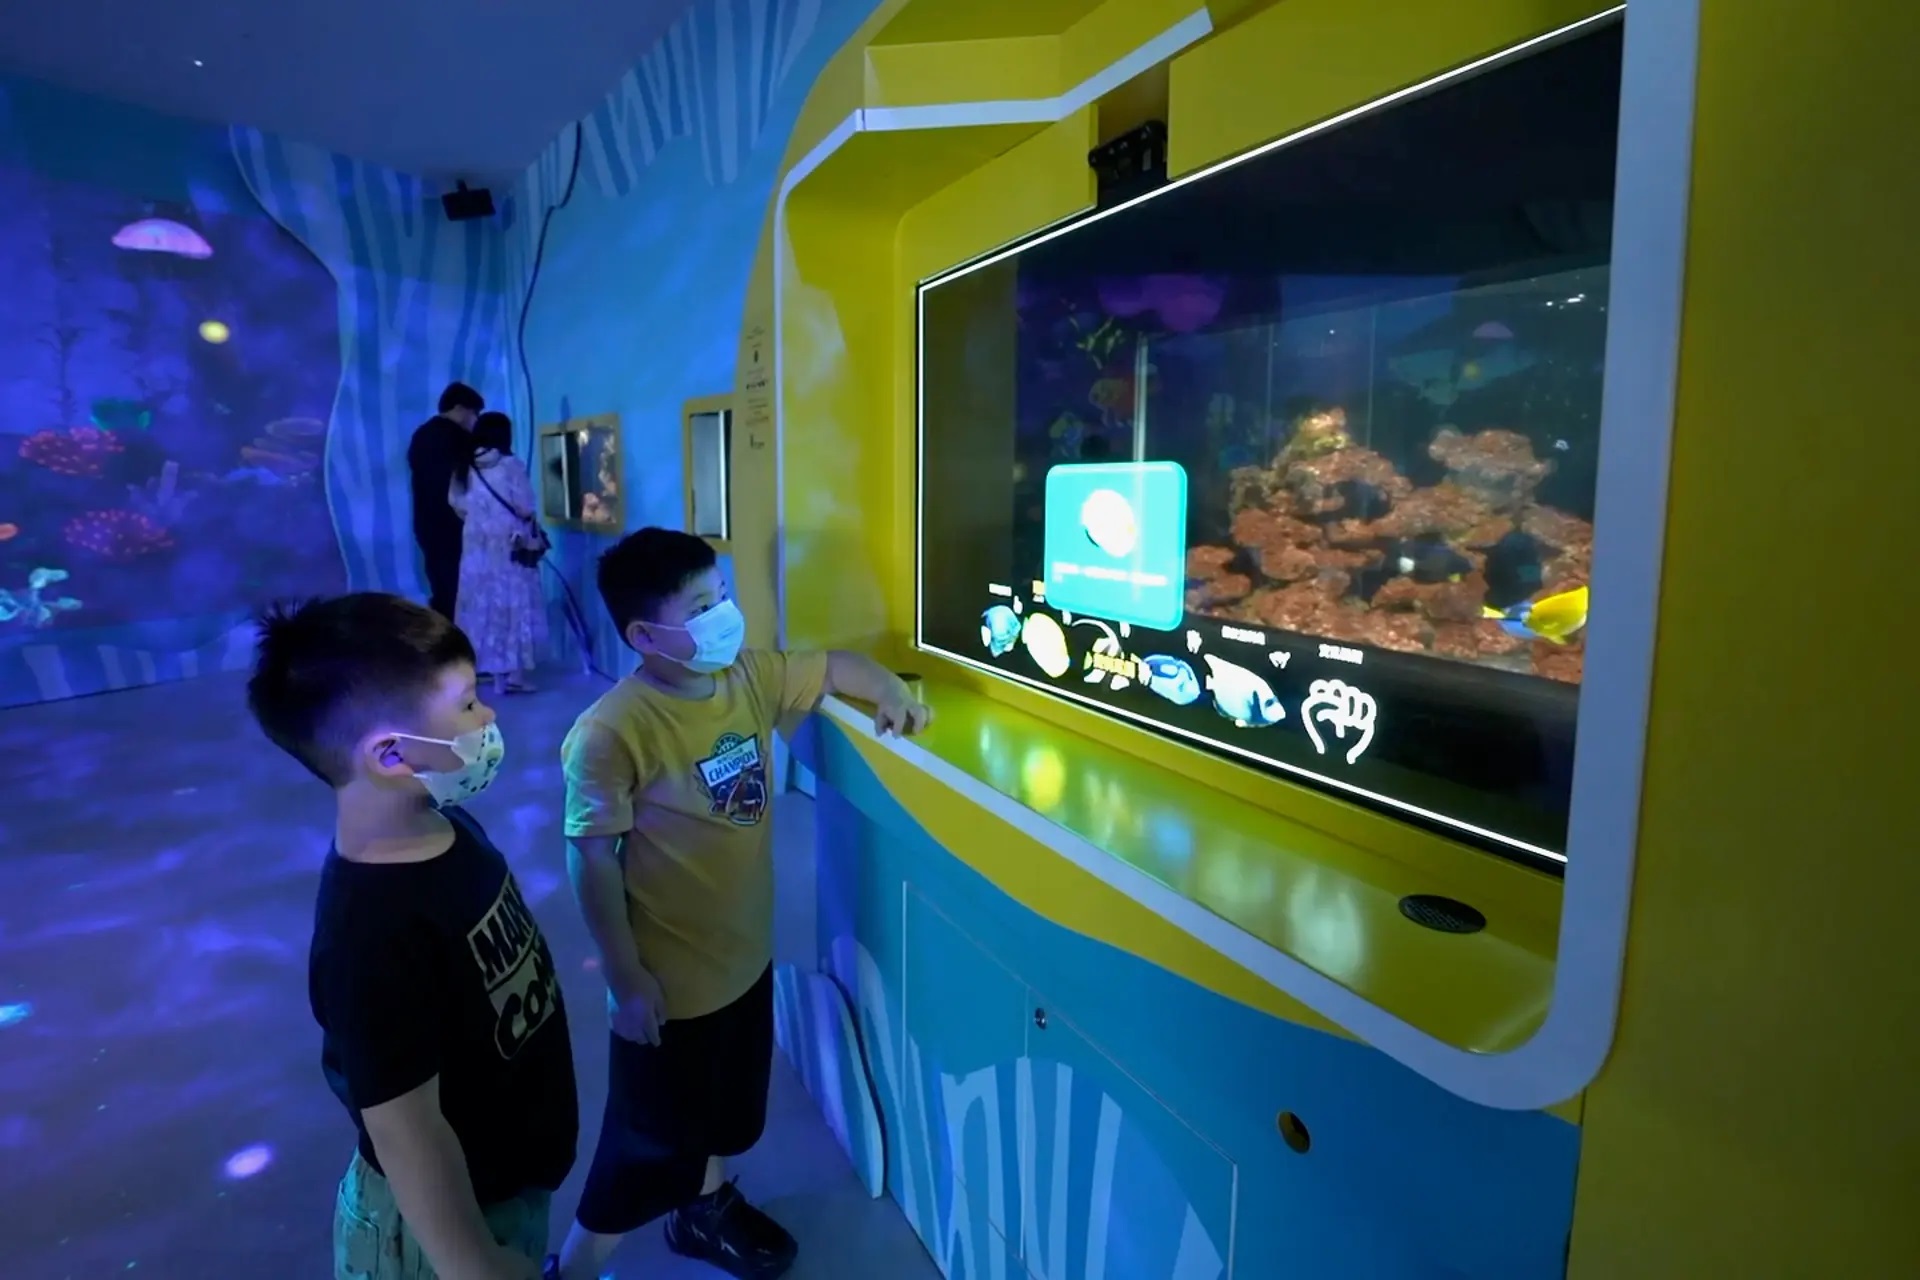 Inteligentne akwarium z AI i wyświetlaczem microLED monitoruje spojrzenia i informuje odwiedzających o rybach, na które patrzą